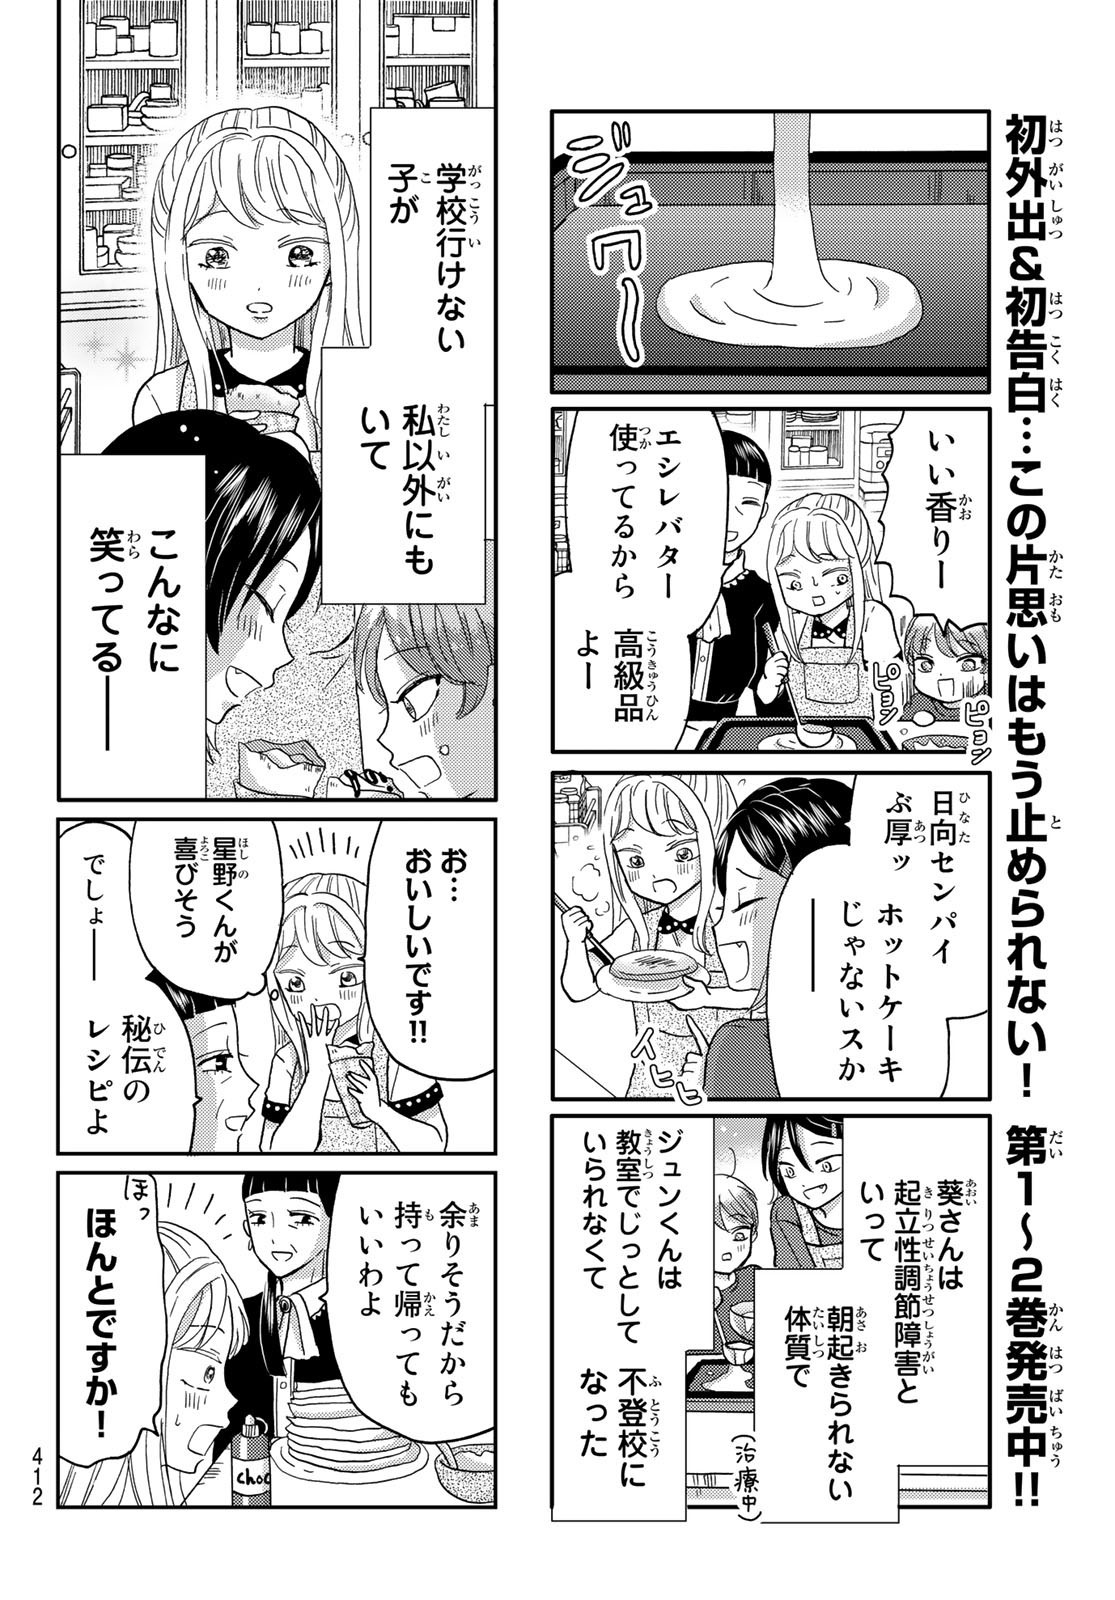 Hinata-san, Hoshino desu. - Chapter 038 - Page 4